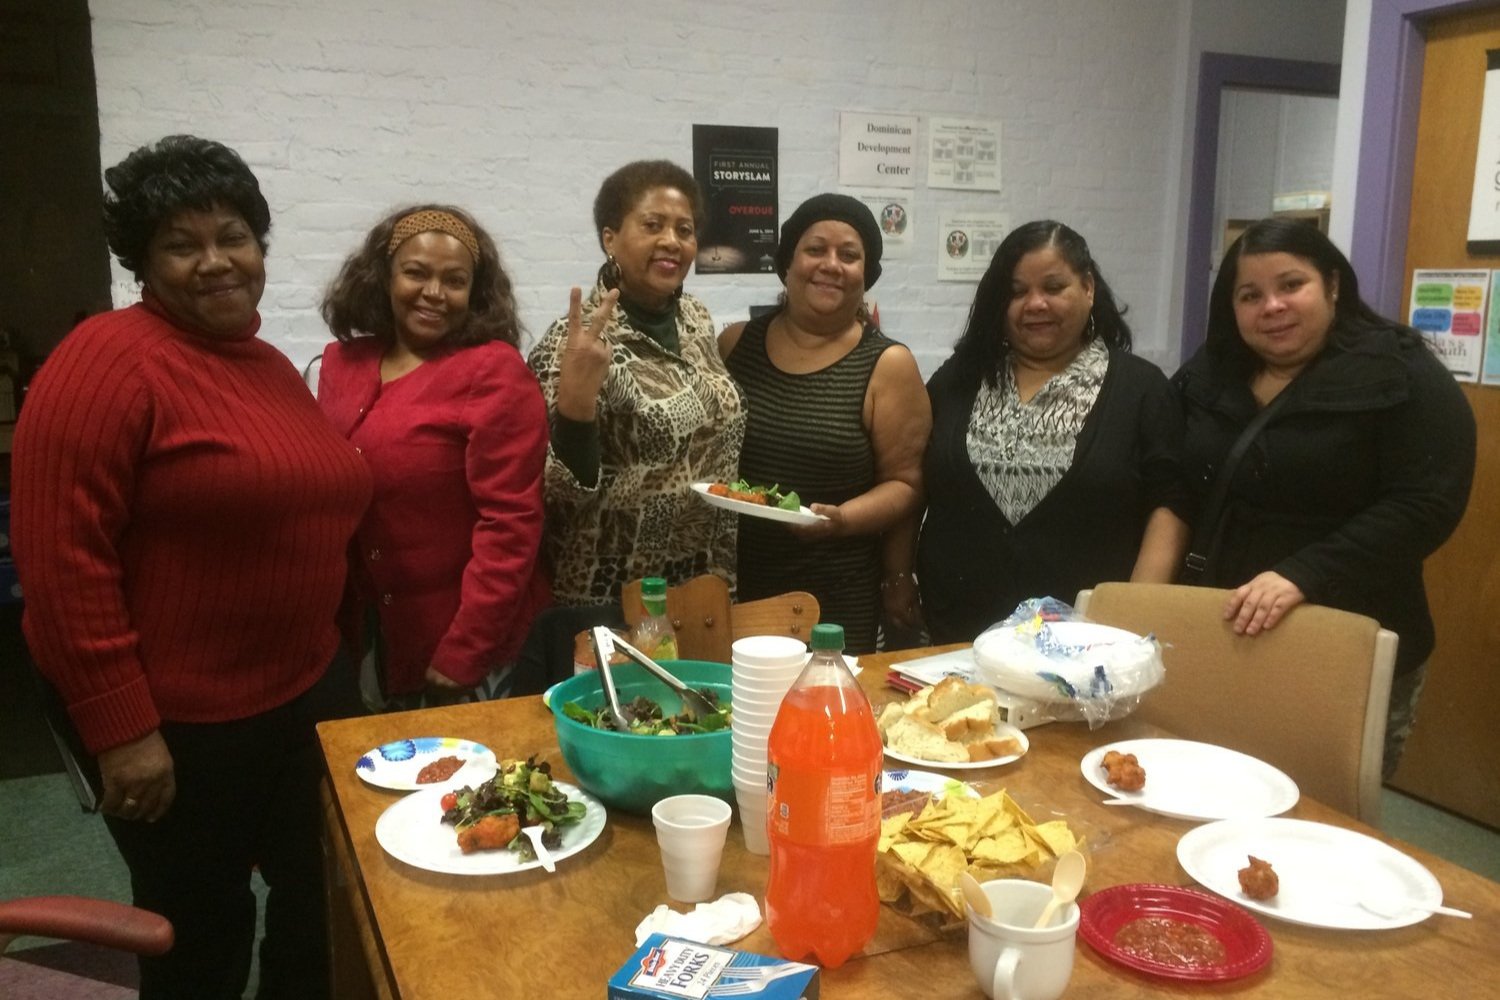  Seis mujeres de color de pie alrededor de una mesa, sonriendo a la cámara. Hay comida en la mesa. 